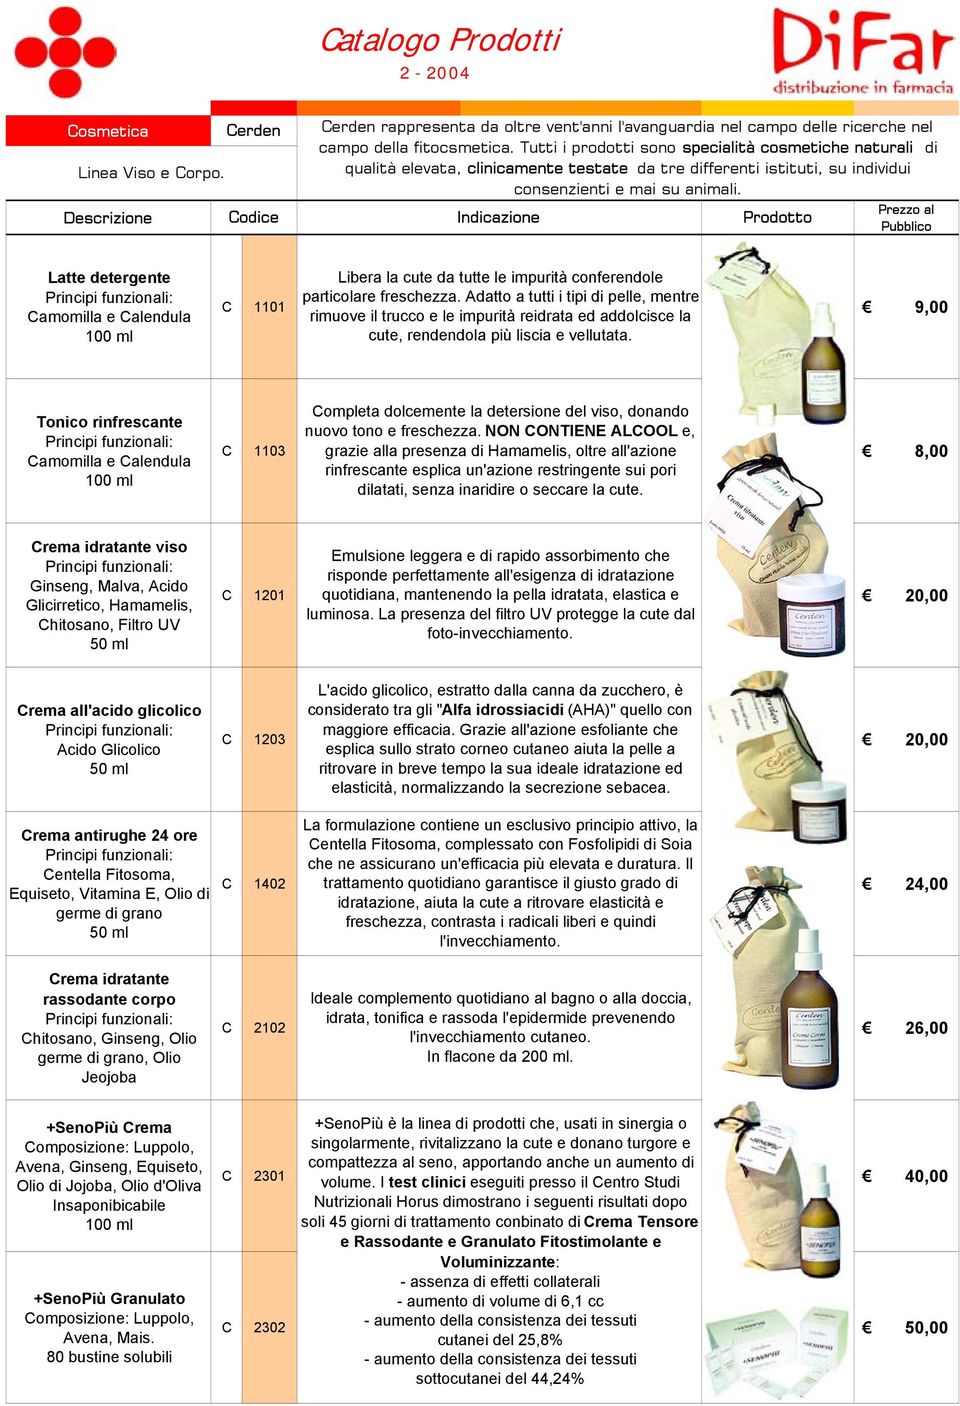 Indicazione Prodotto Latte detergente Principi funzionali: Camomilla e Calendula 100 ml Libera la cute da tutte le impurità conferendole C 1101 particolare freschezza.